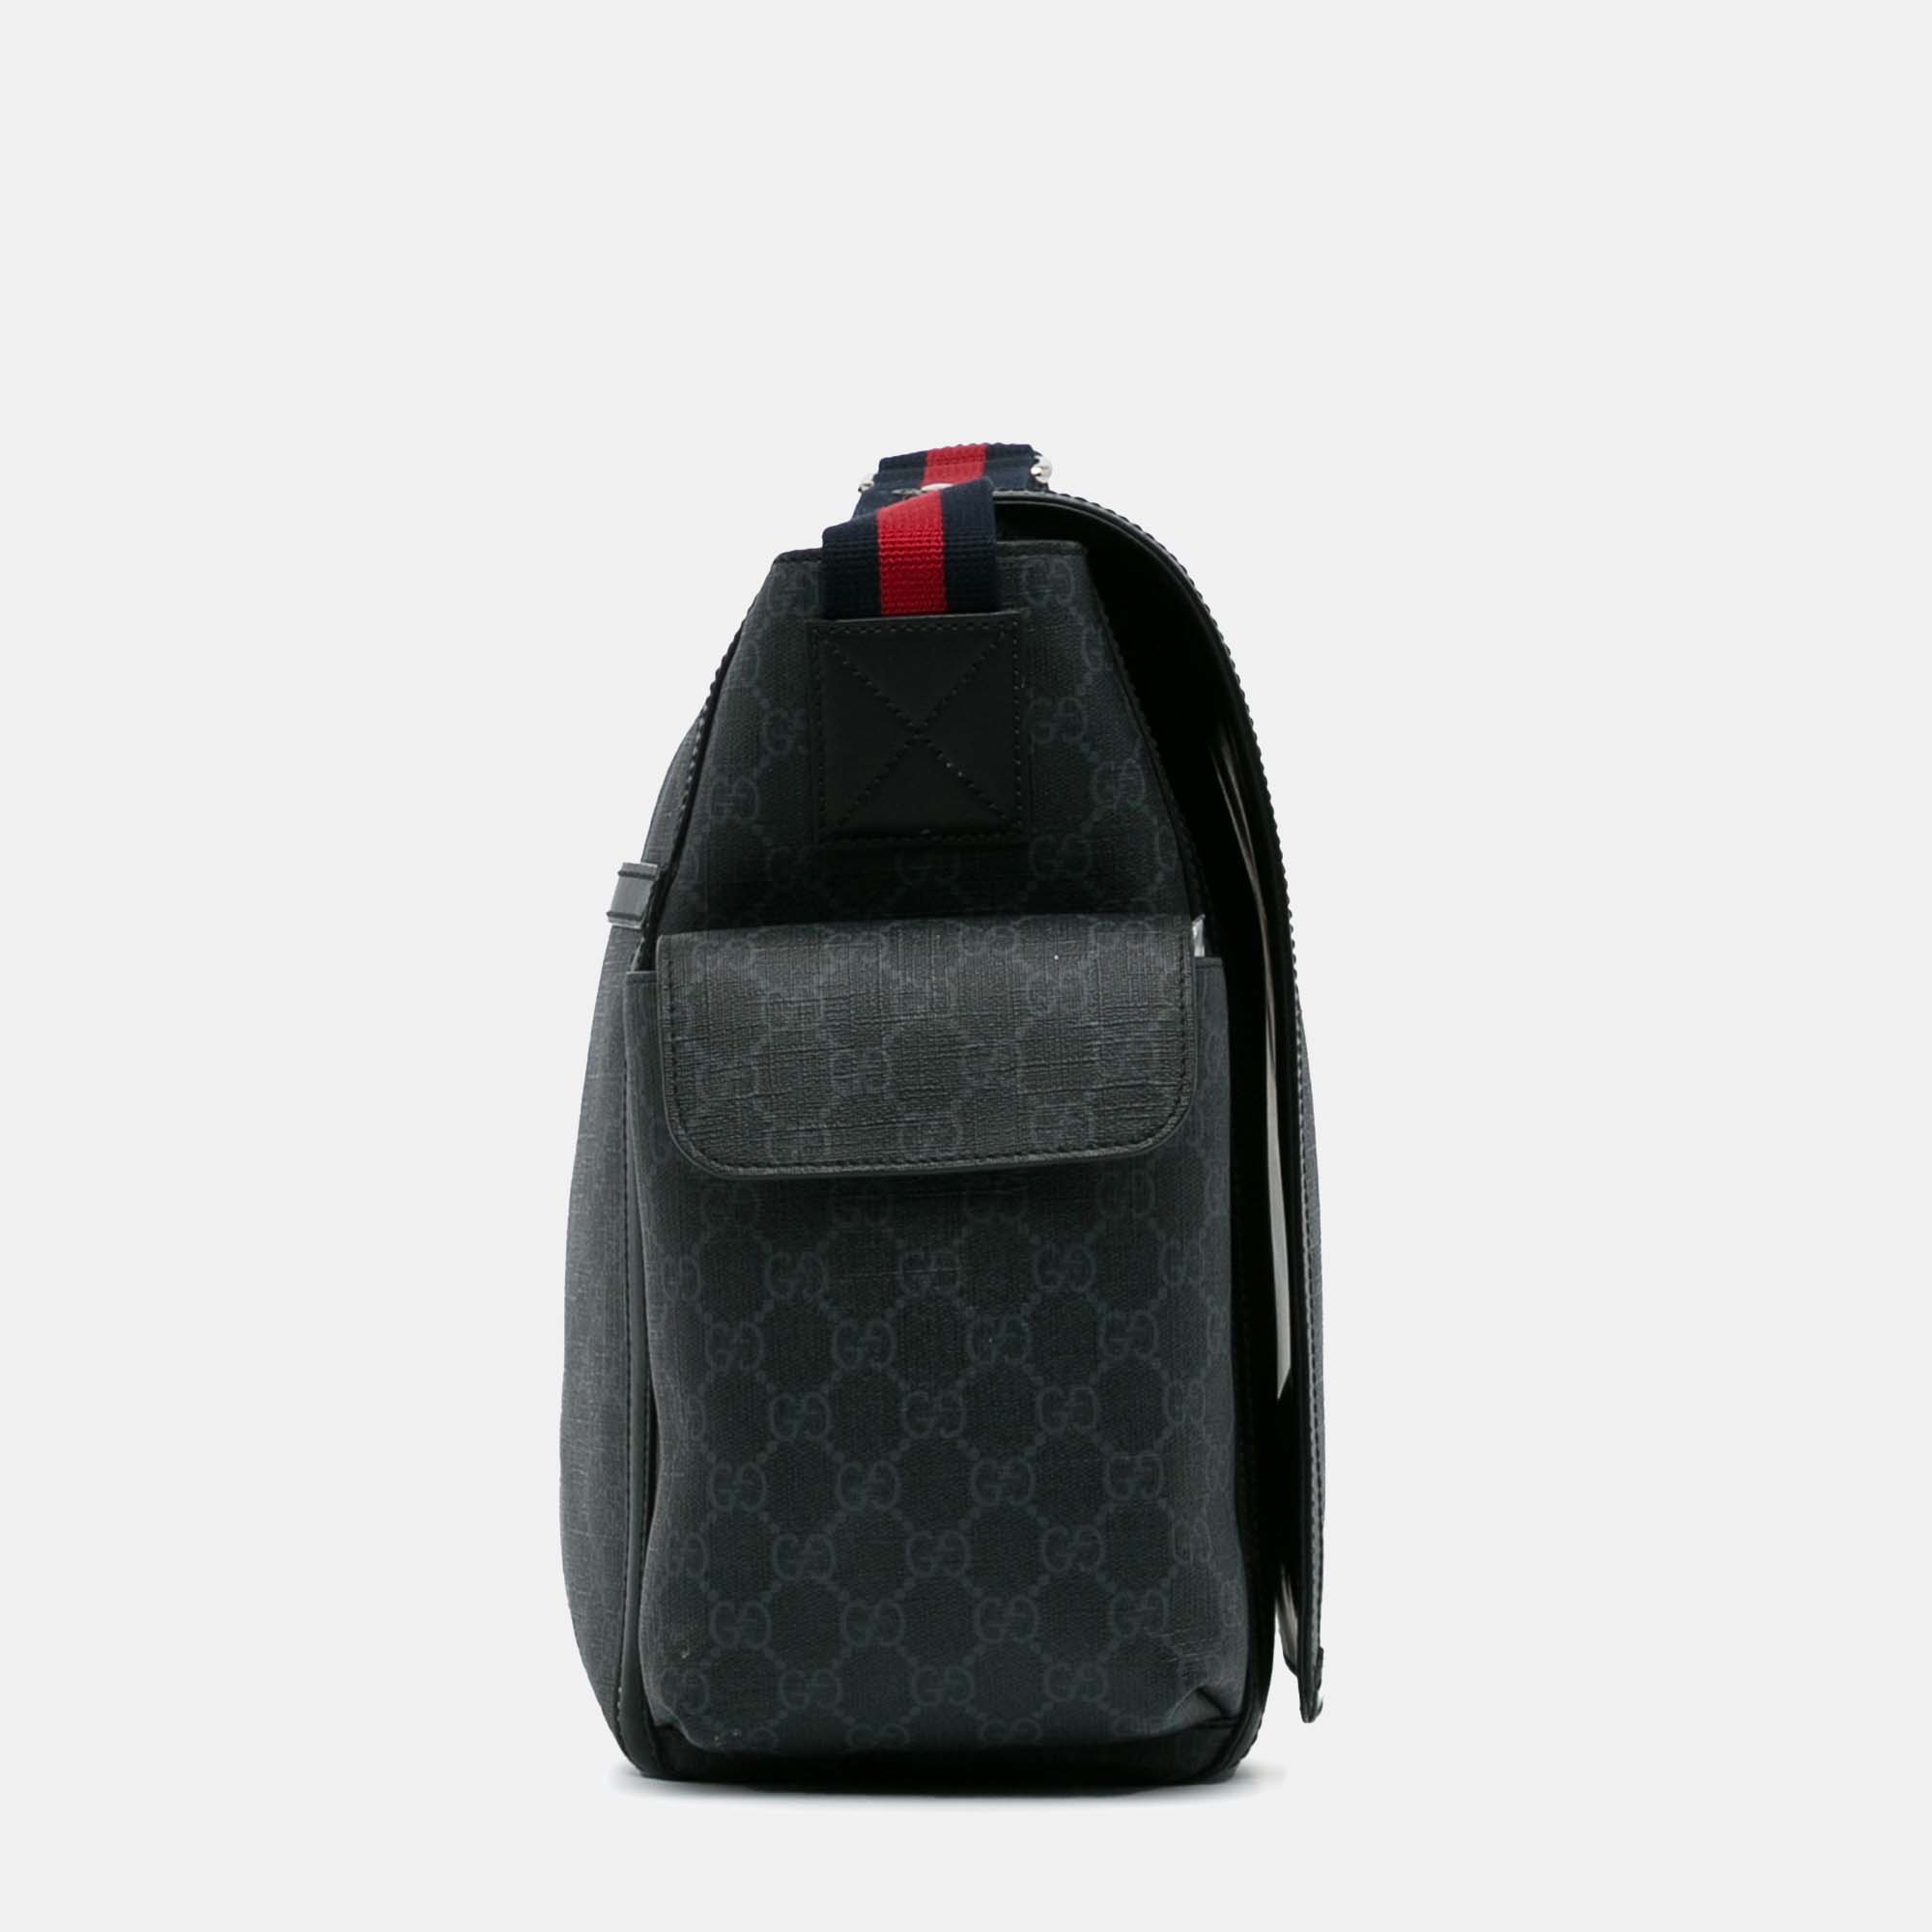 Gucci GG Supreme Web Diaper Bag